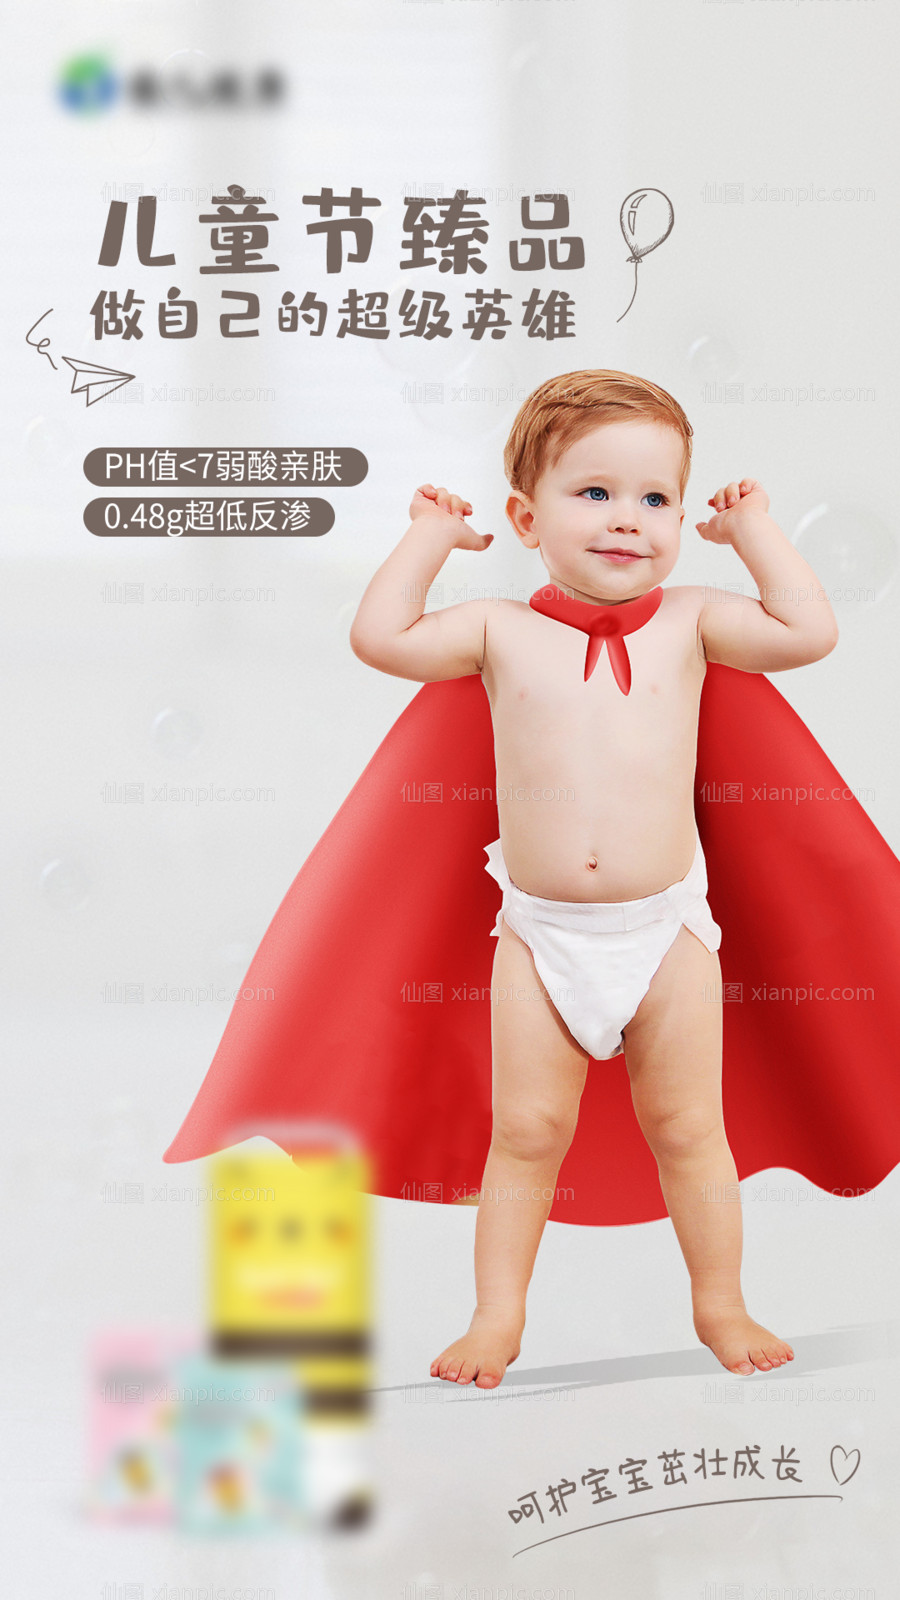 素材乐-婴儿纸尿裤产品海报